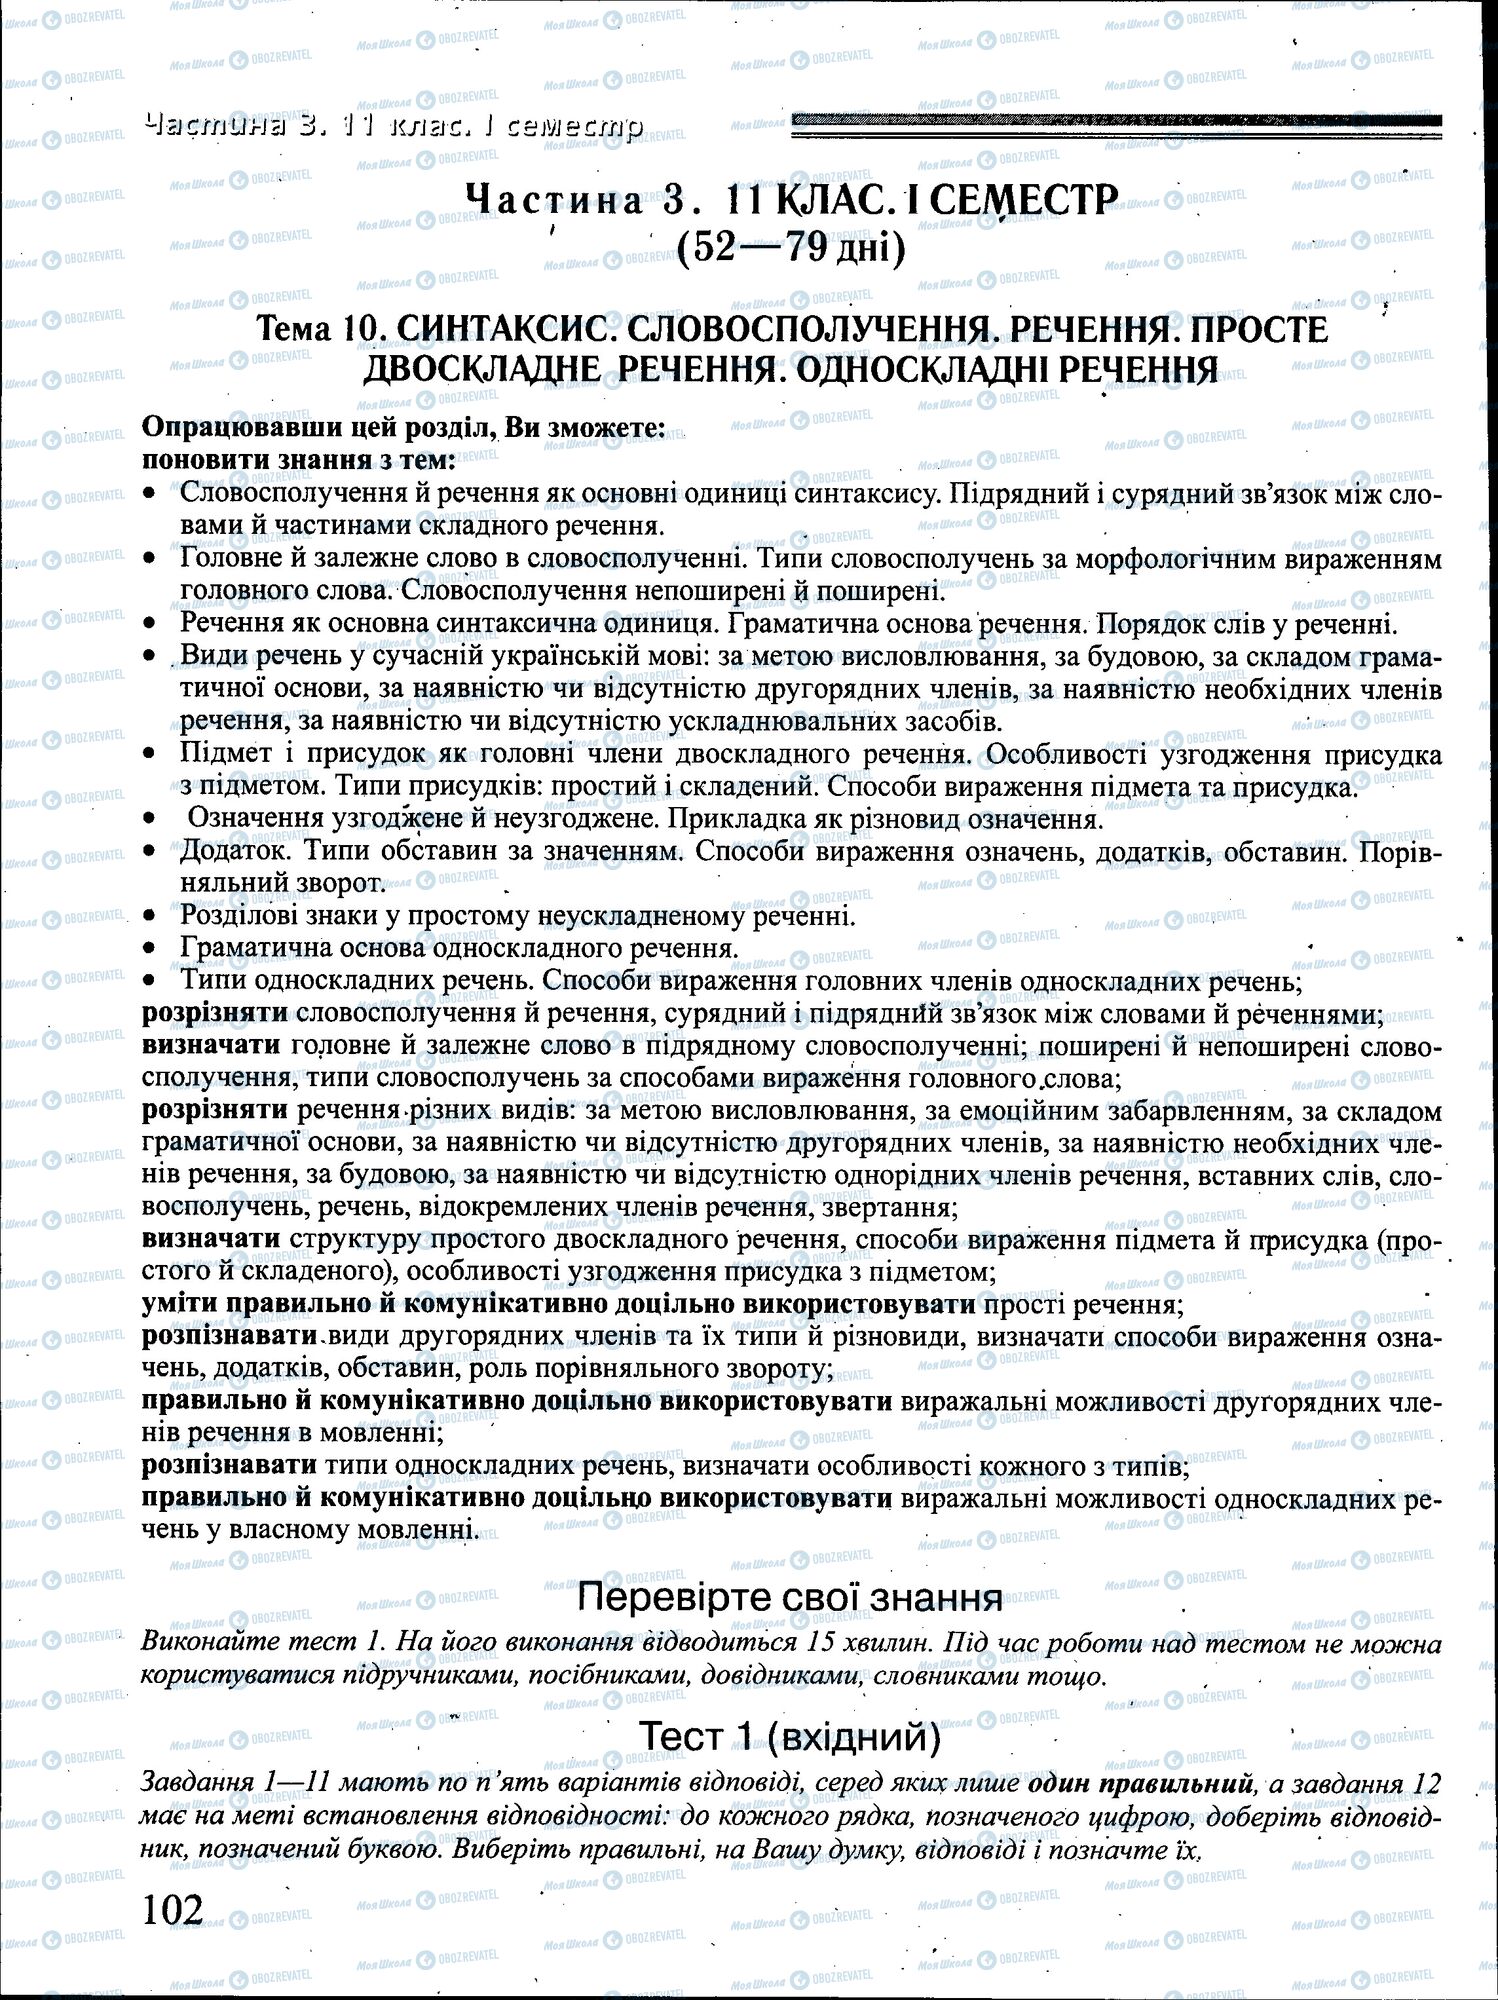 ДПА Укр мова 4 класс страница 102